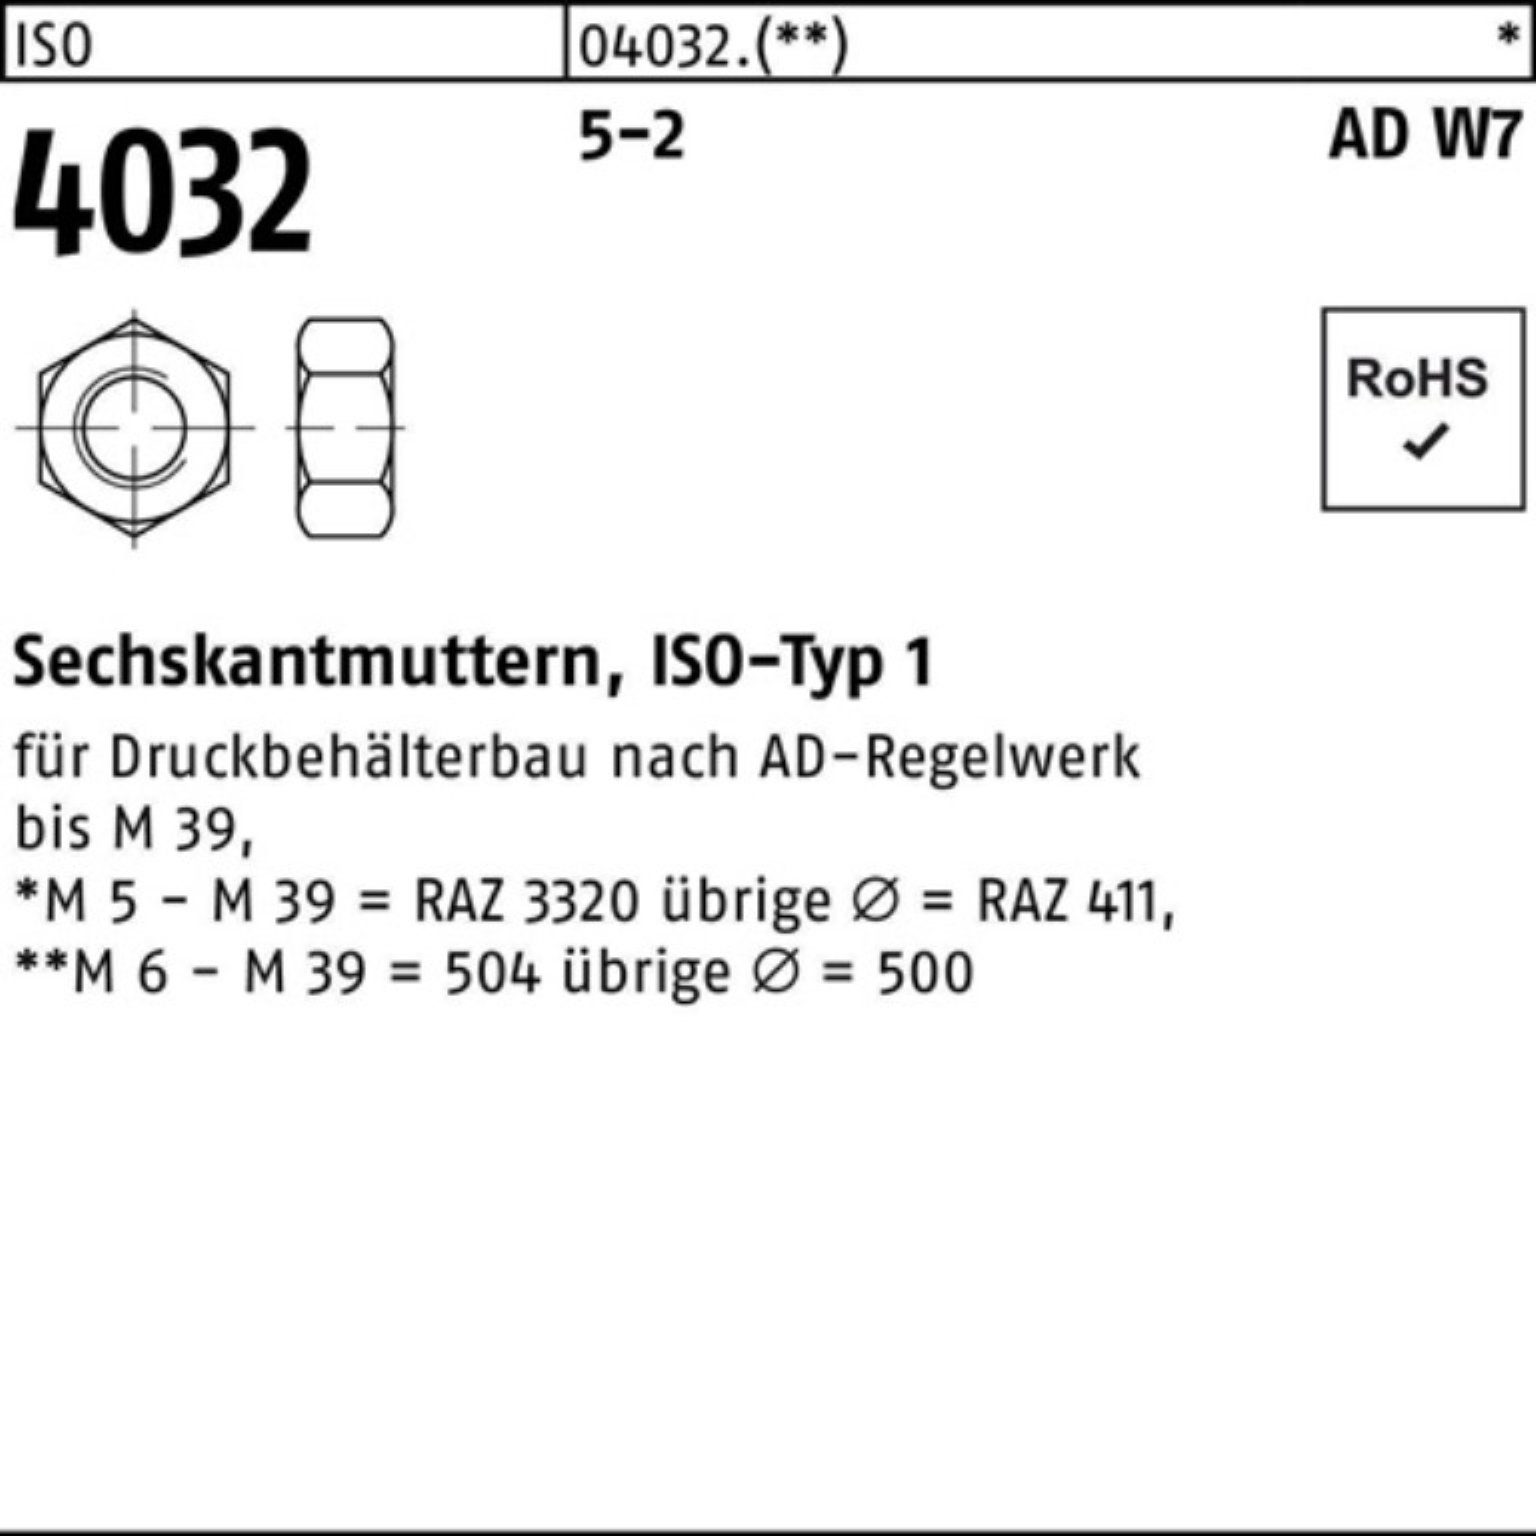 Bufab Muttern 100er Pack Sechskantmutter Stück 4032 100 ISO M16 W7 ISO AD 4032 5-2